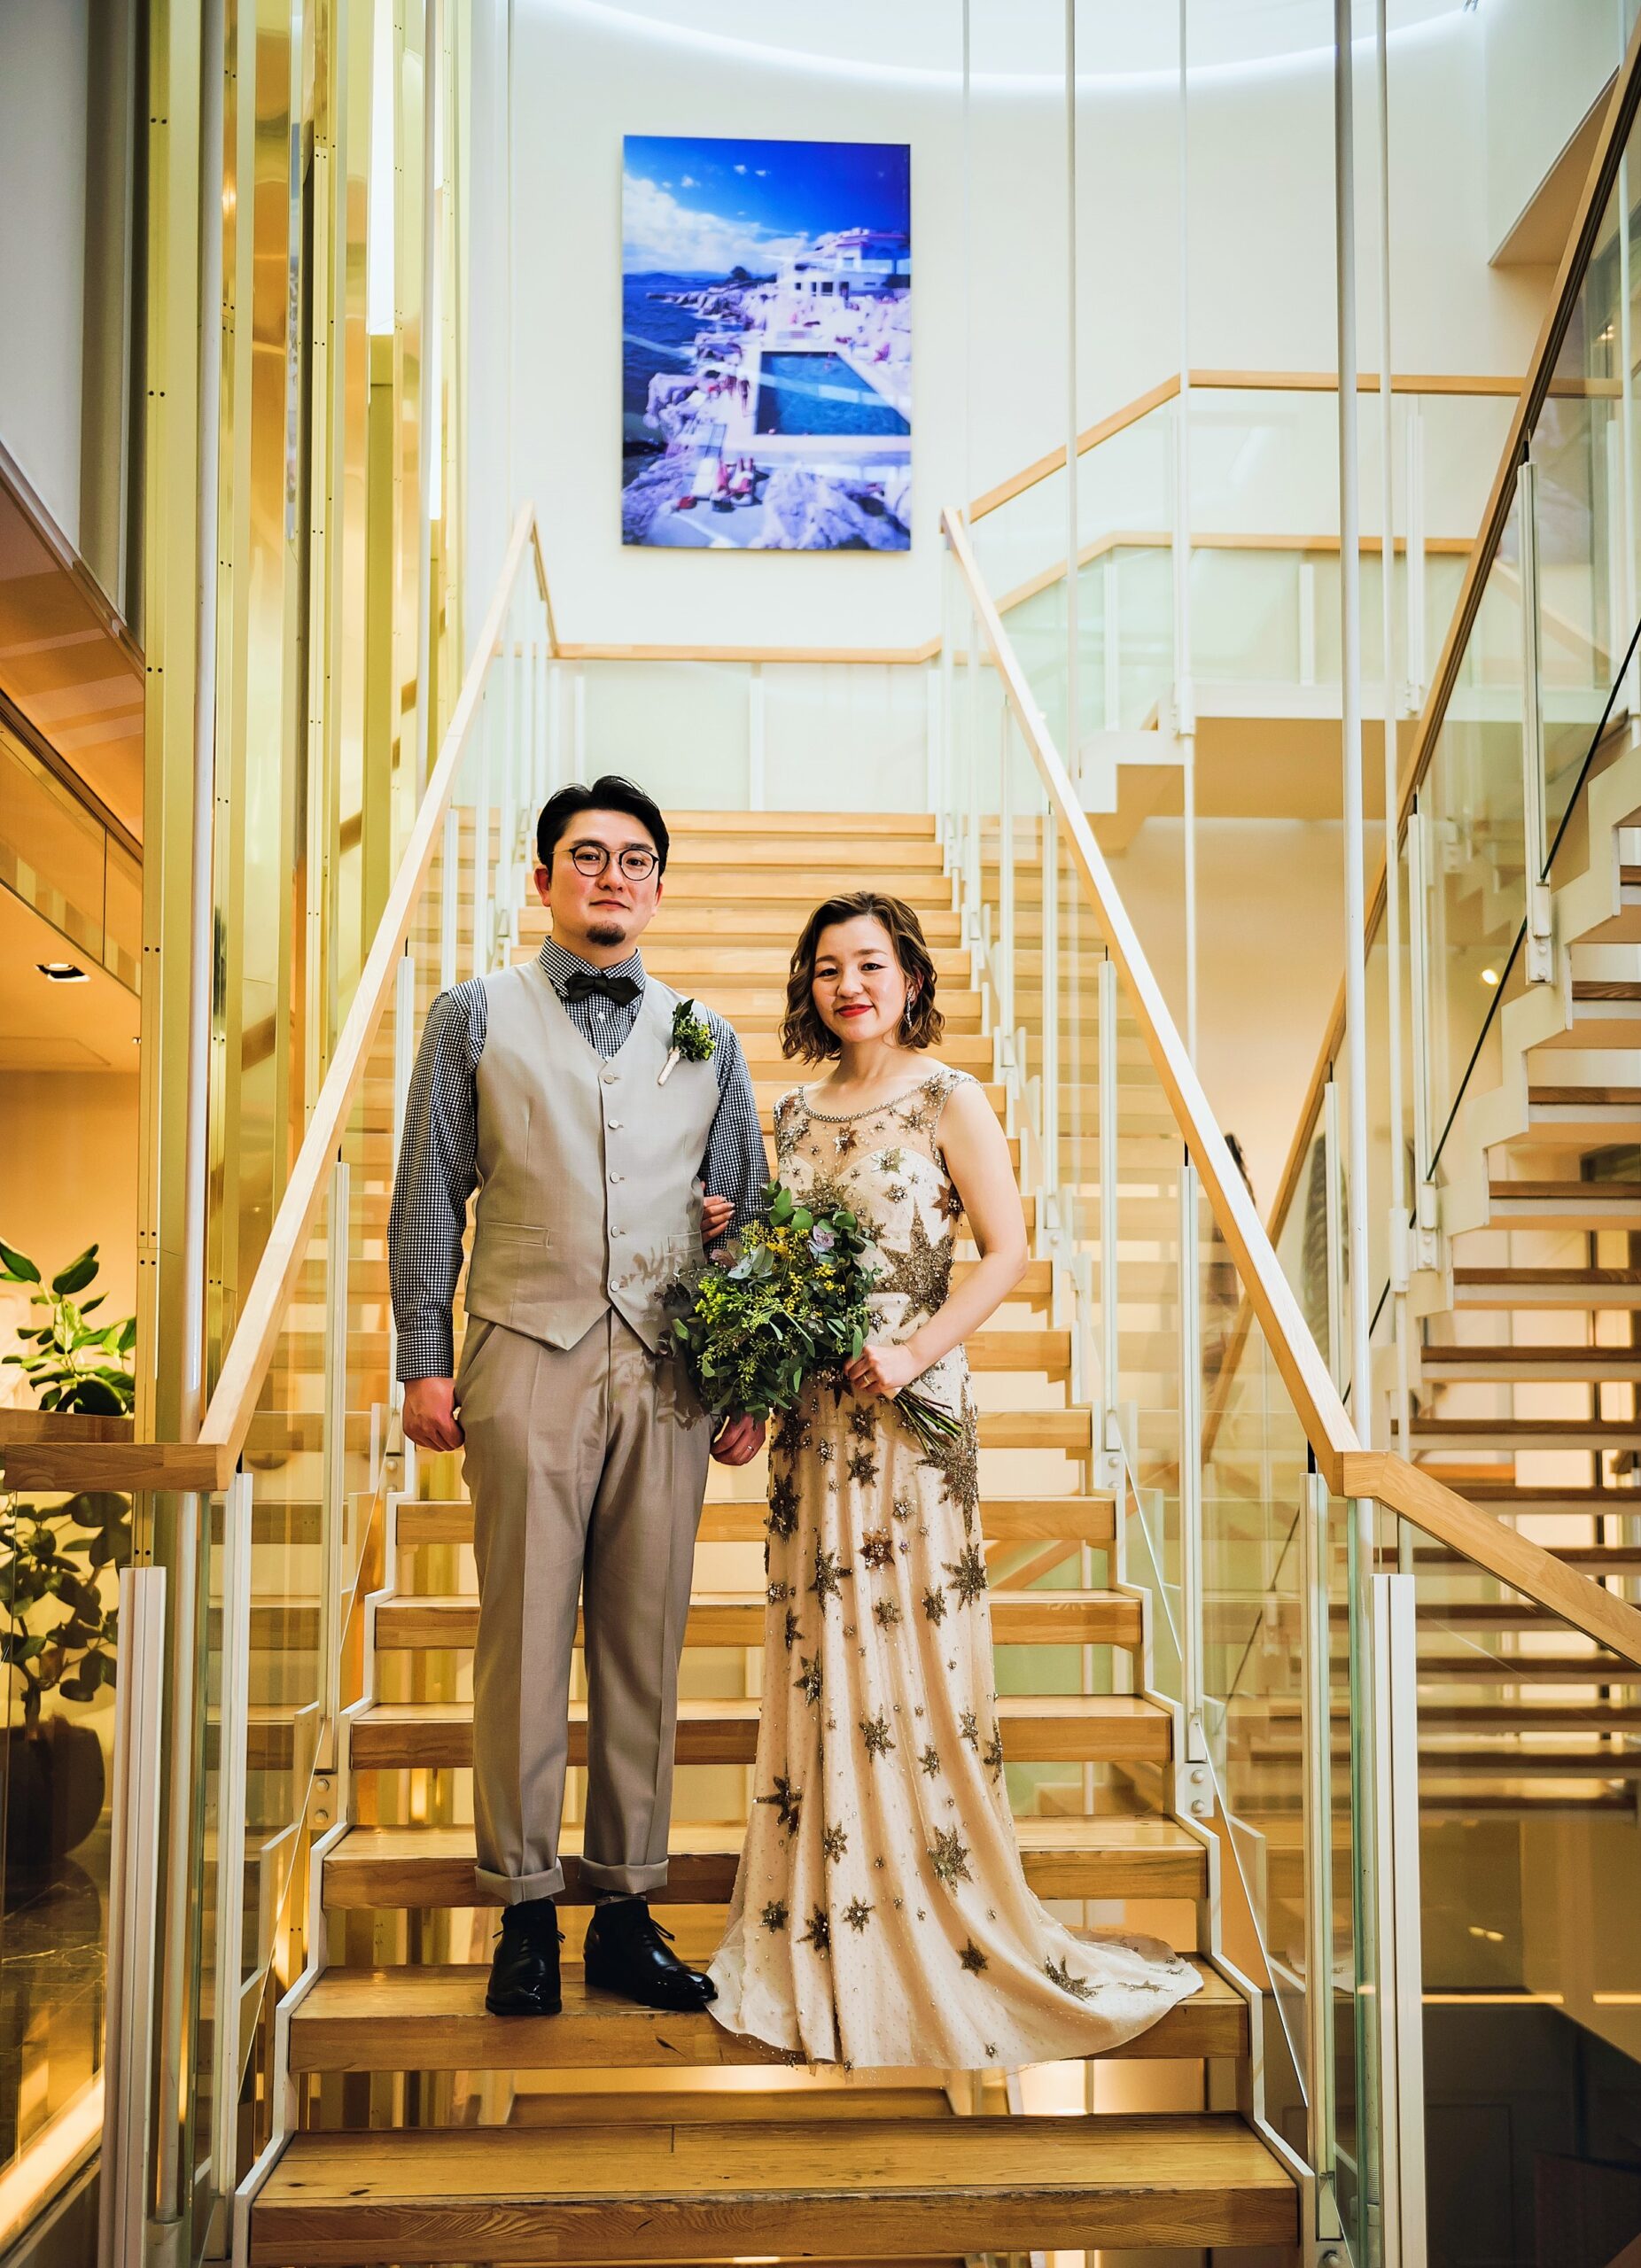 アマンダンブルー鎌倉で叶えるアットホームな結婚式にはジェニー パッカムのウェディングドレスがぴったり